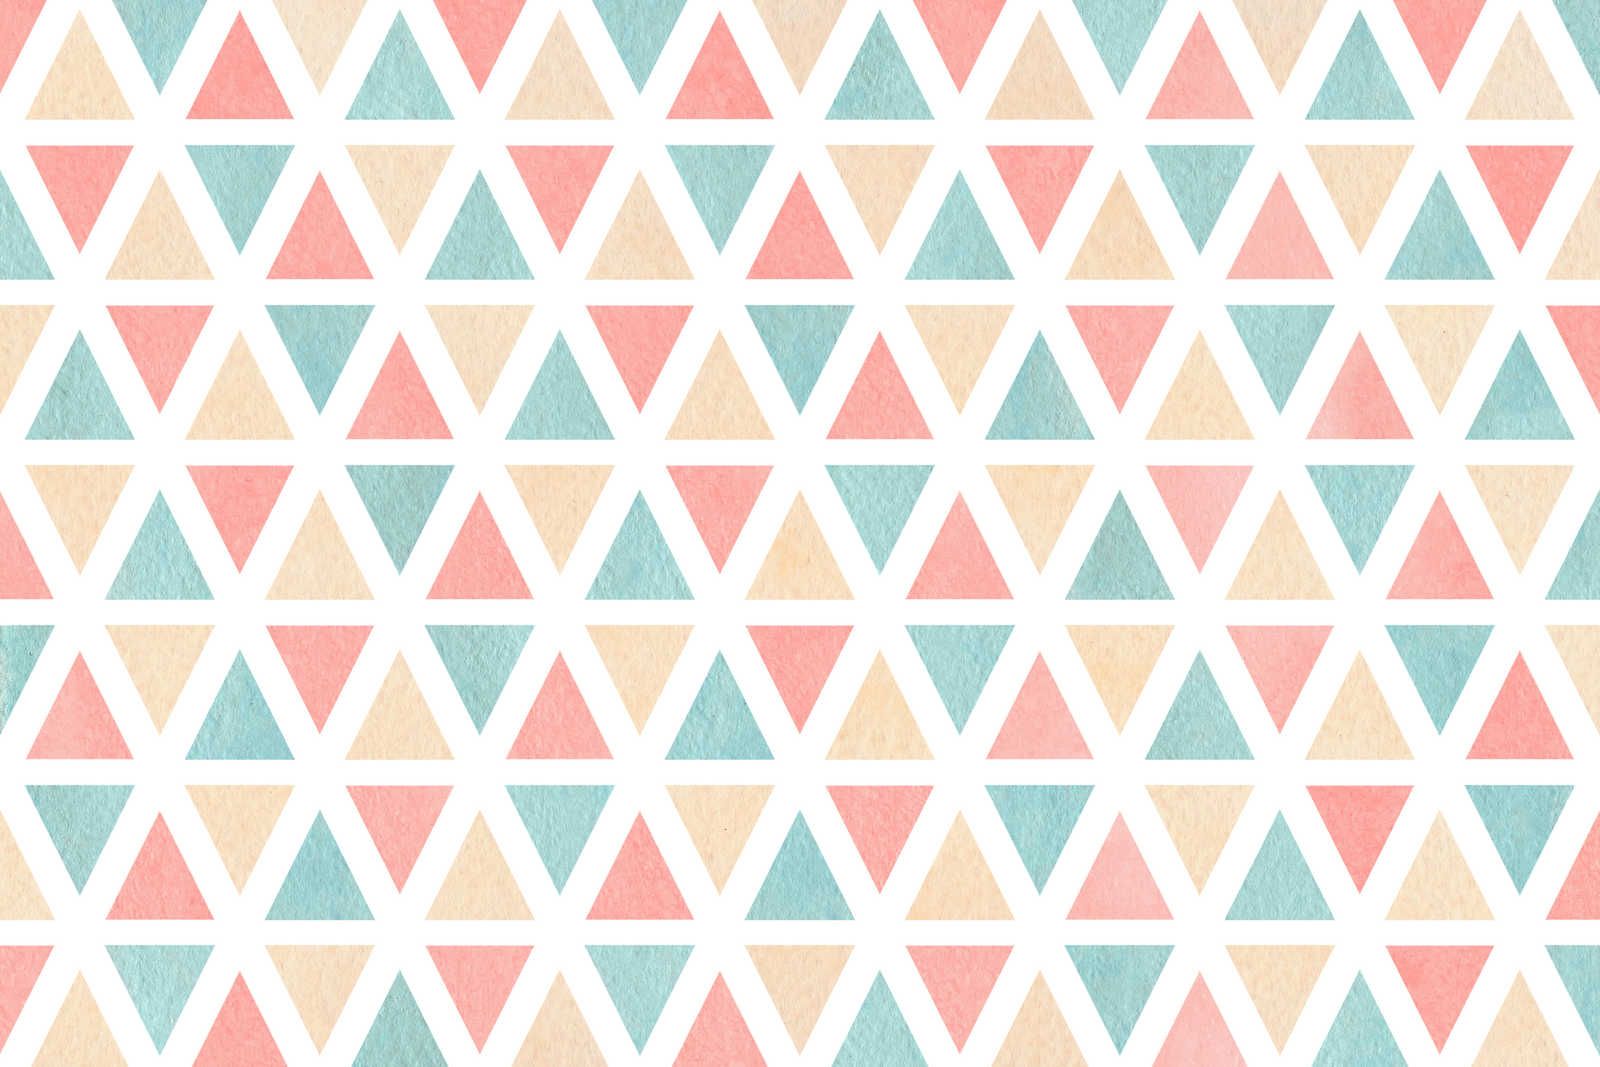             Leinwand grafisches Muster mit bunten Dreiecken – 120 cm x 80 cm
        